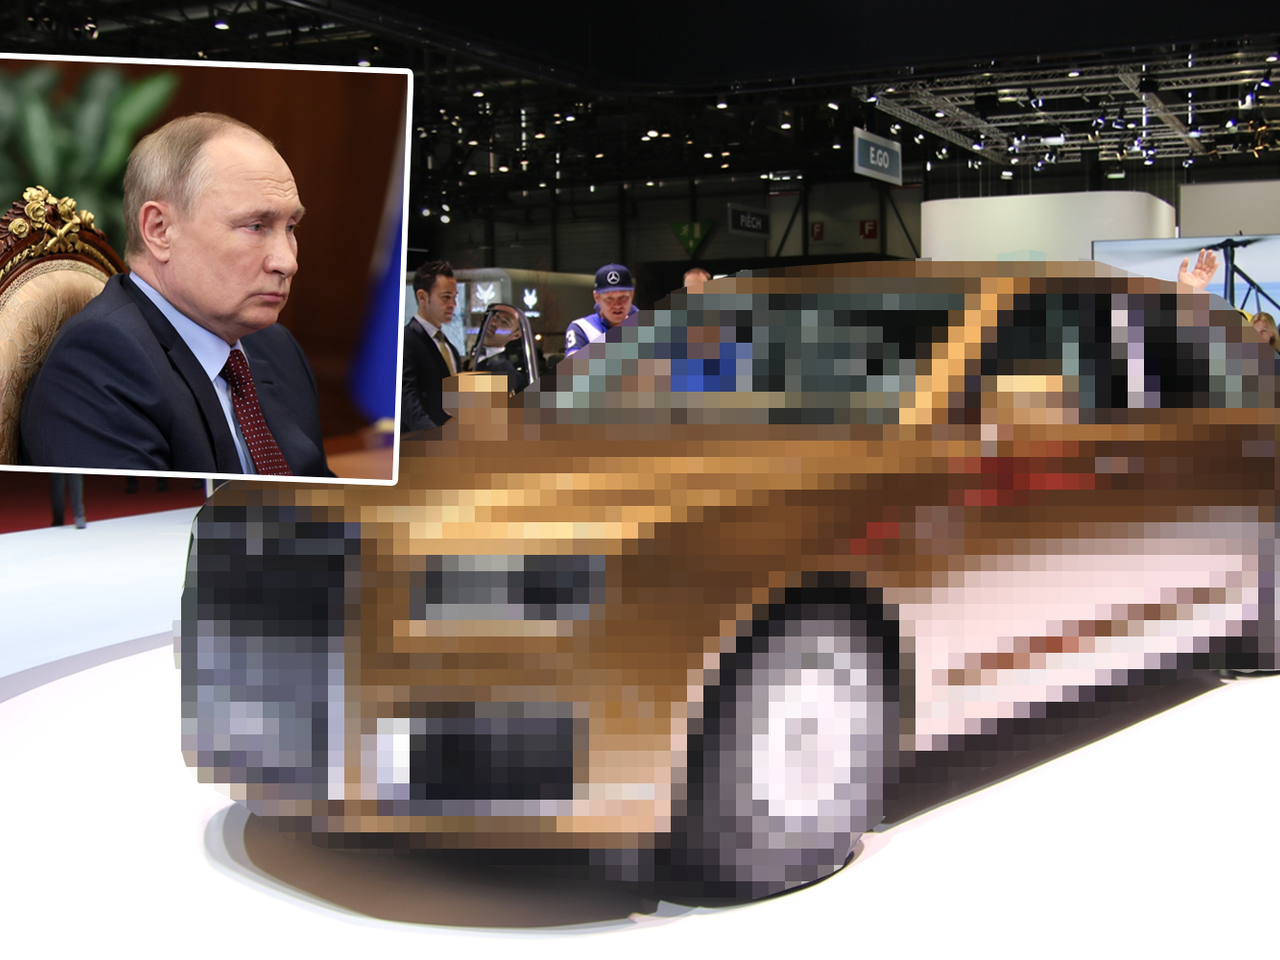 Samochód Putina. Takim autem jeździ przywódca, który ma krew na rękach